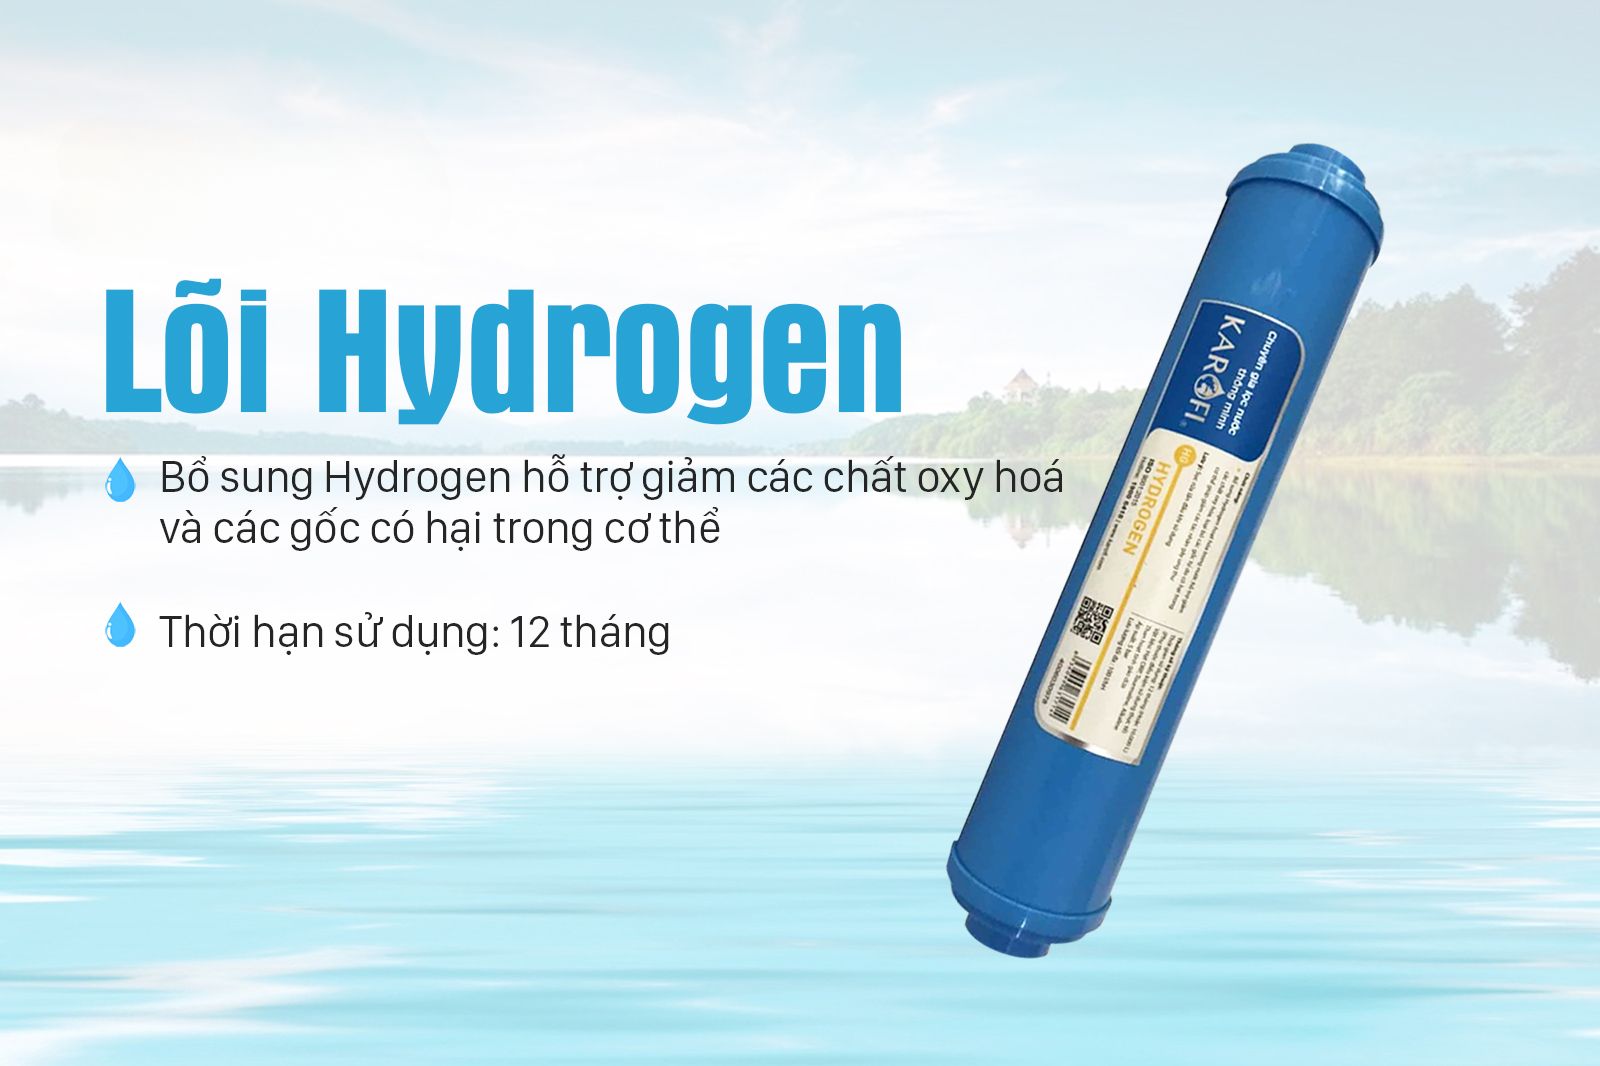 Lõi Hydrogen giúp tăng cường hệ miễn dịch cho con người thông qua nguồn nước được lọc sạch và bổ sung khoáng chất tự nhiên